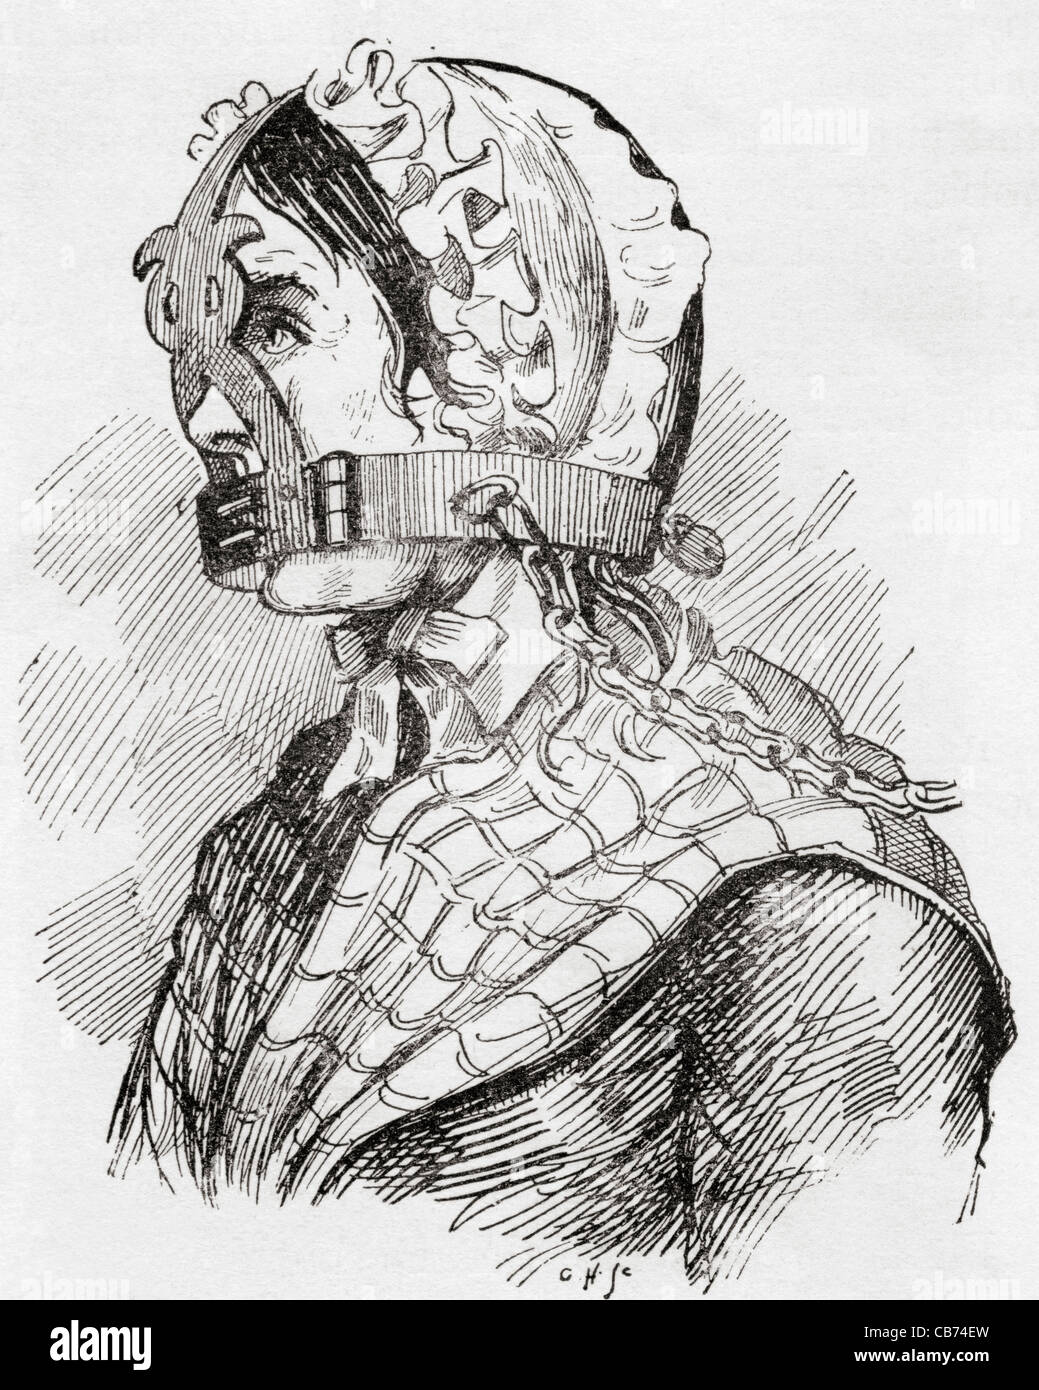 Frau trägt ein Derbyshire Knebeleisen oder Maulkorb im 17. Jahrhundert. Von The Strand Magazine veröffentlicht 1894. Stockfoto